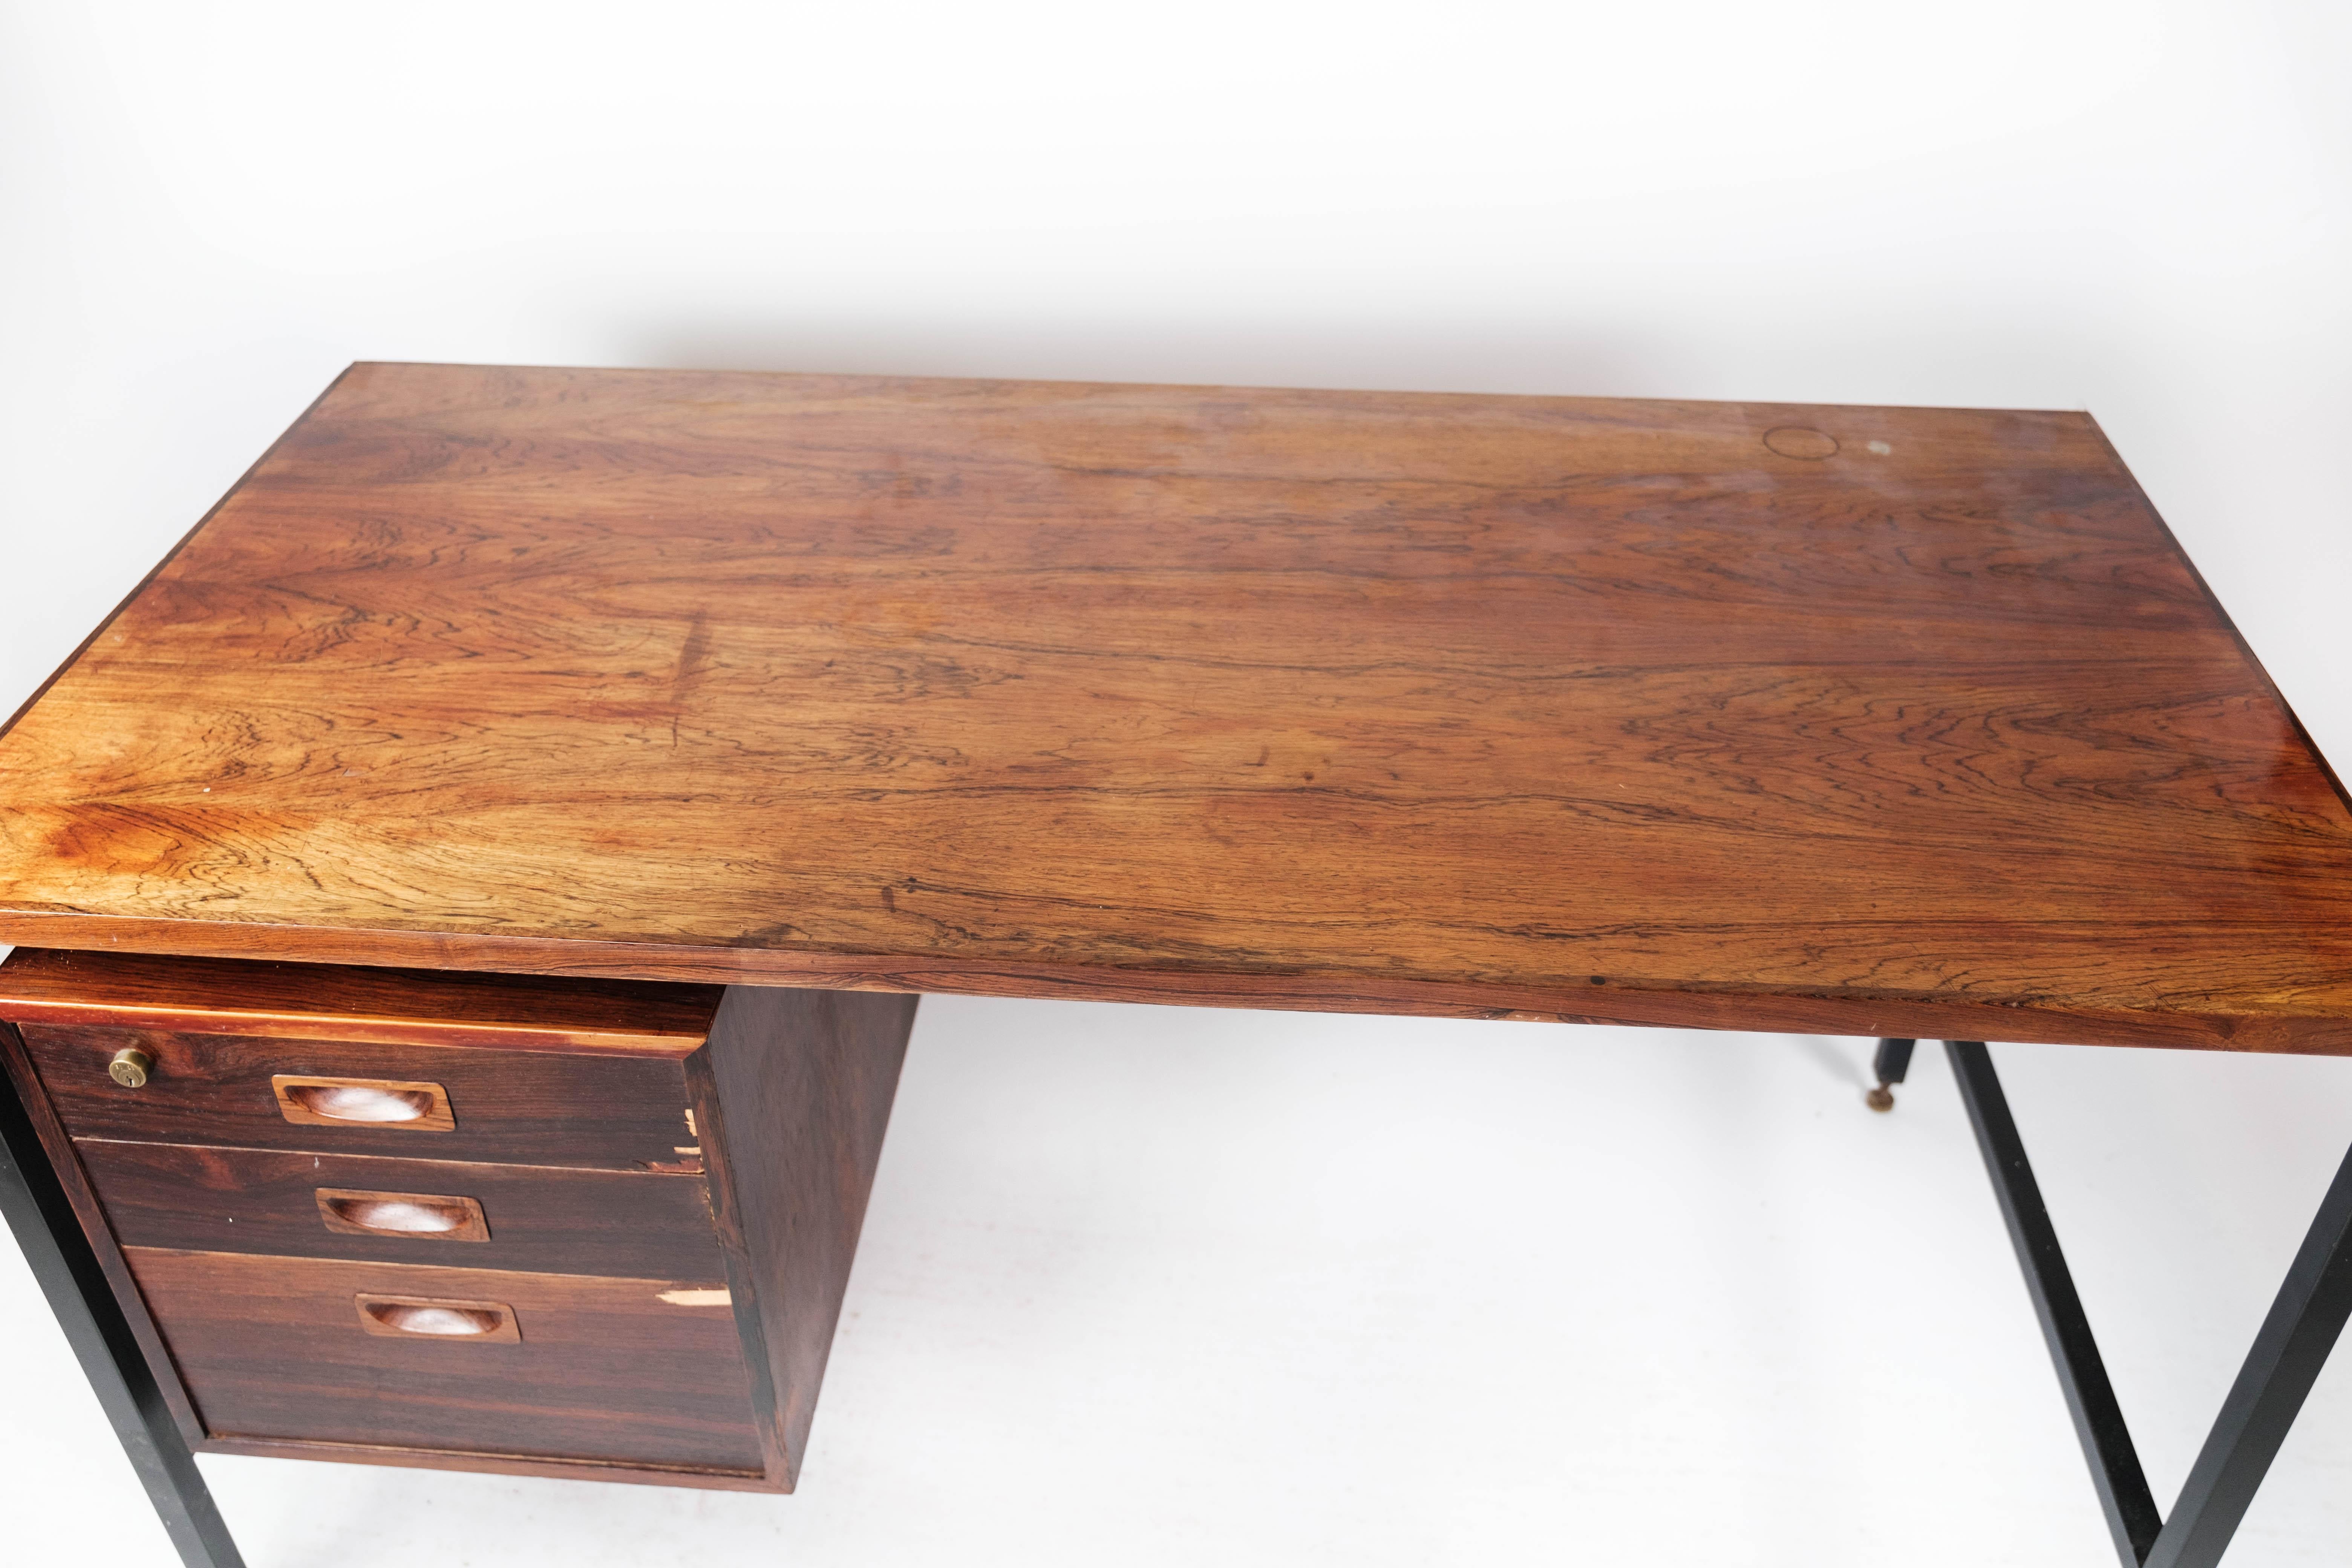 Bureau en bois de rose et pieds en métal, de conception danoise des années 1960. La table est en excellent état vintage.